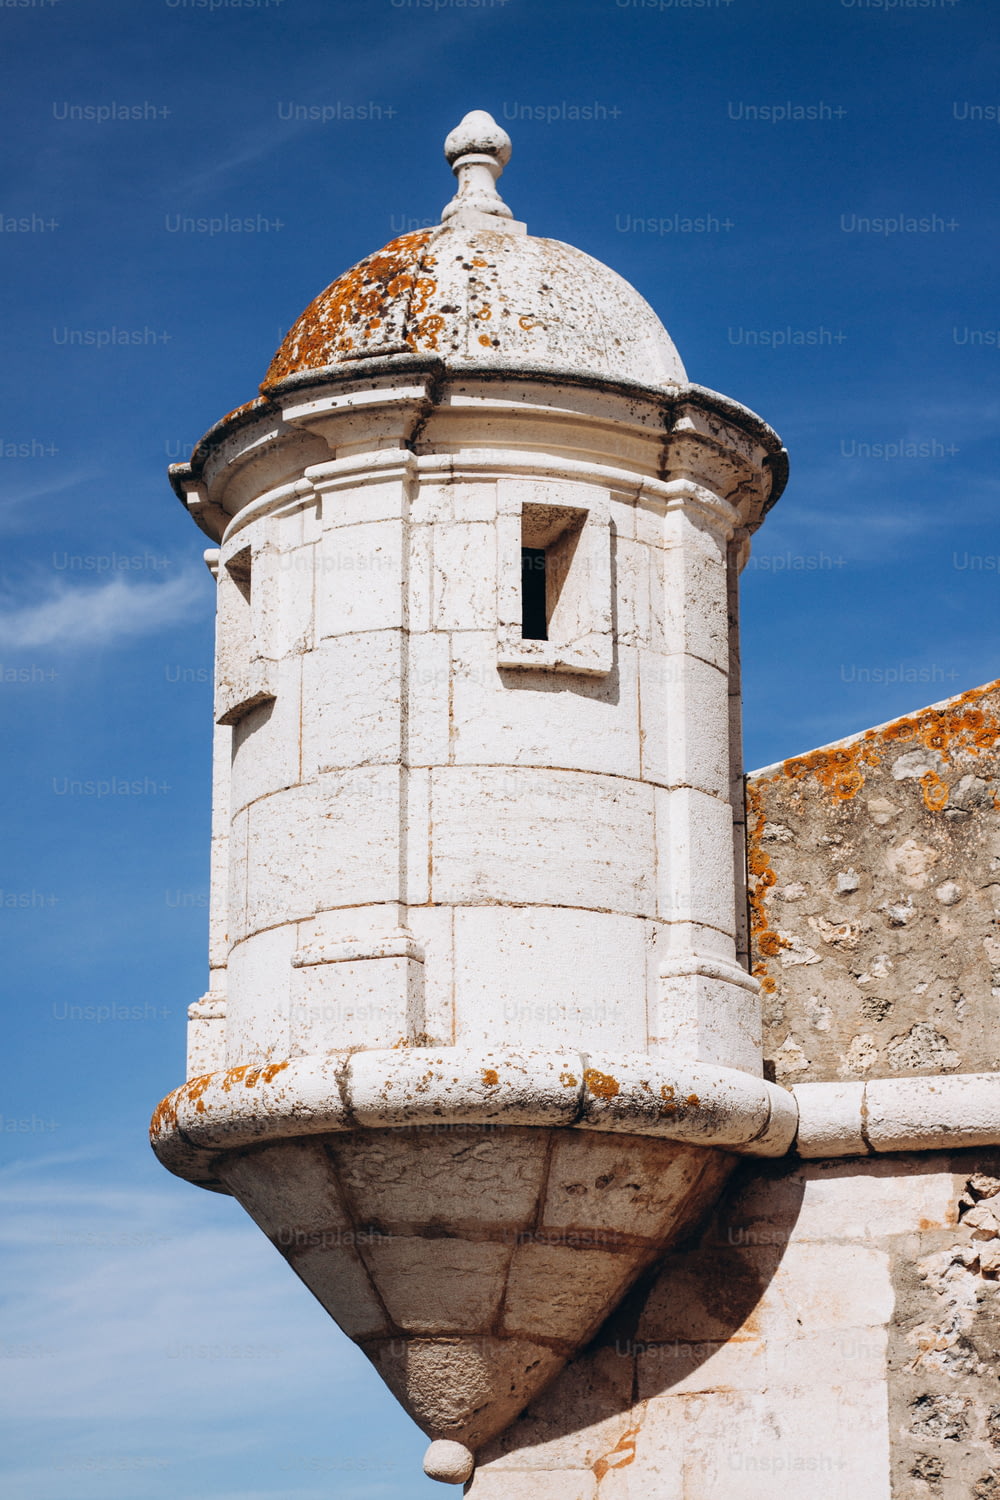 Una torre blanca con un techo oxidado contra un cielo azul